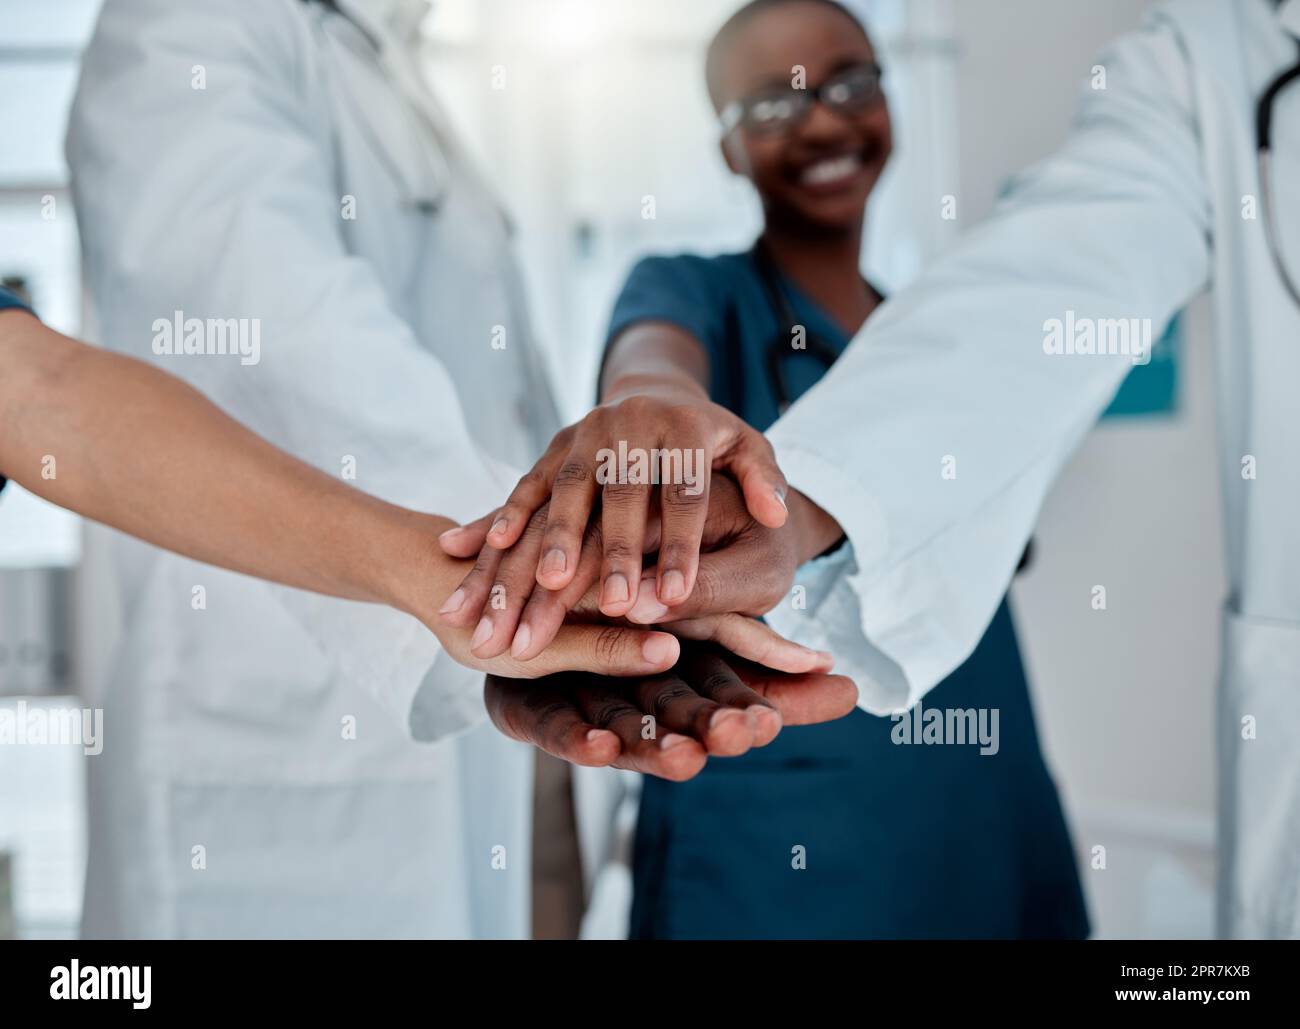 Gruppo di diversi medici che impilano le mani insieme in supporto mentre lavorano in un ospedale. Professionisti medici uniscono le loro mani in unità e motivazione mentre lavorano in una clinica Foto Stock